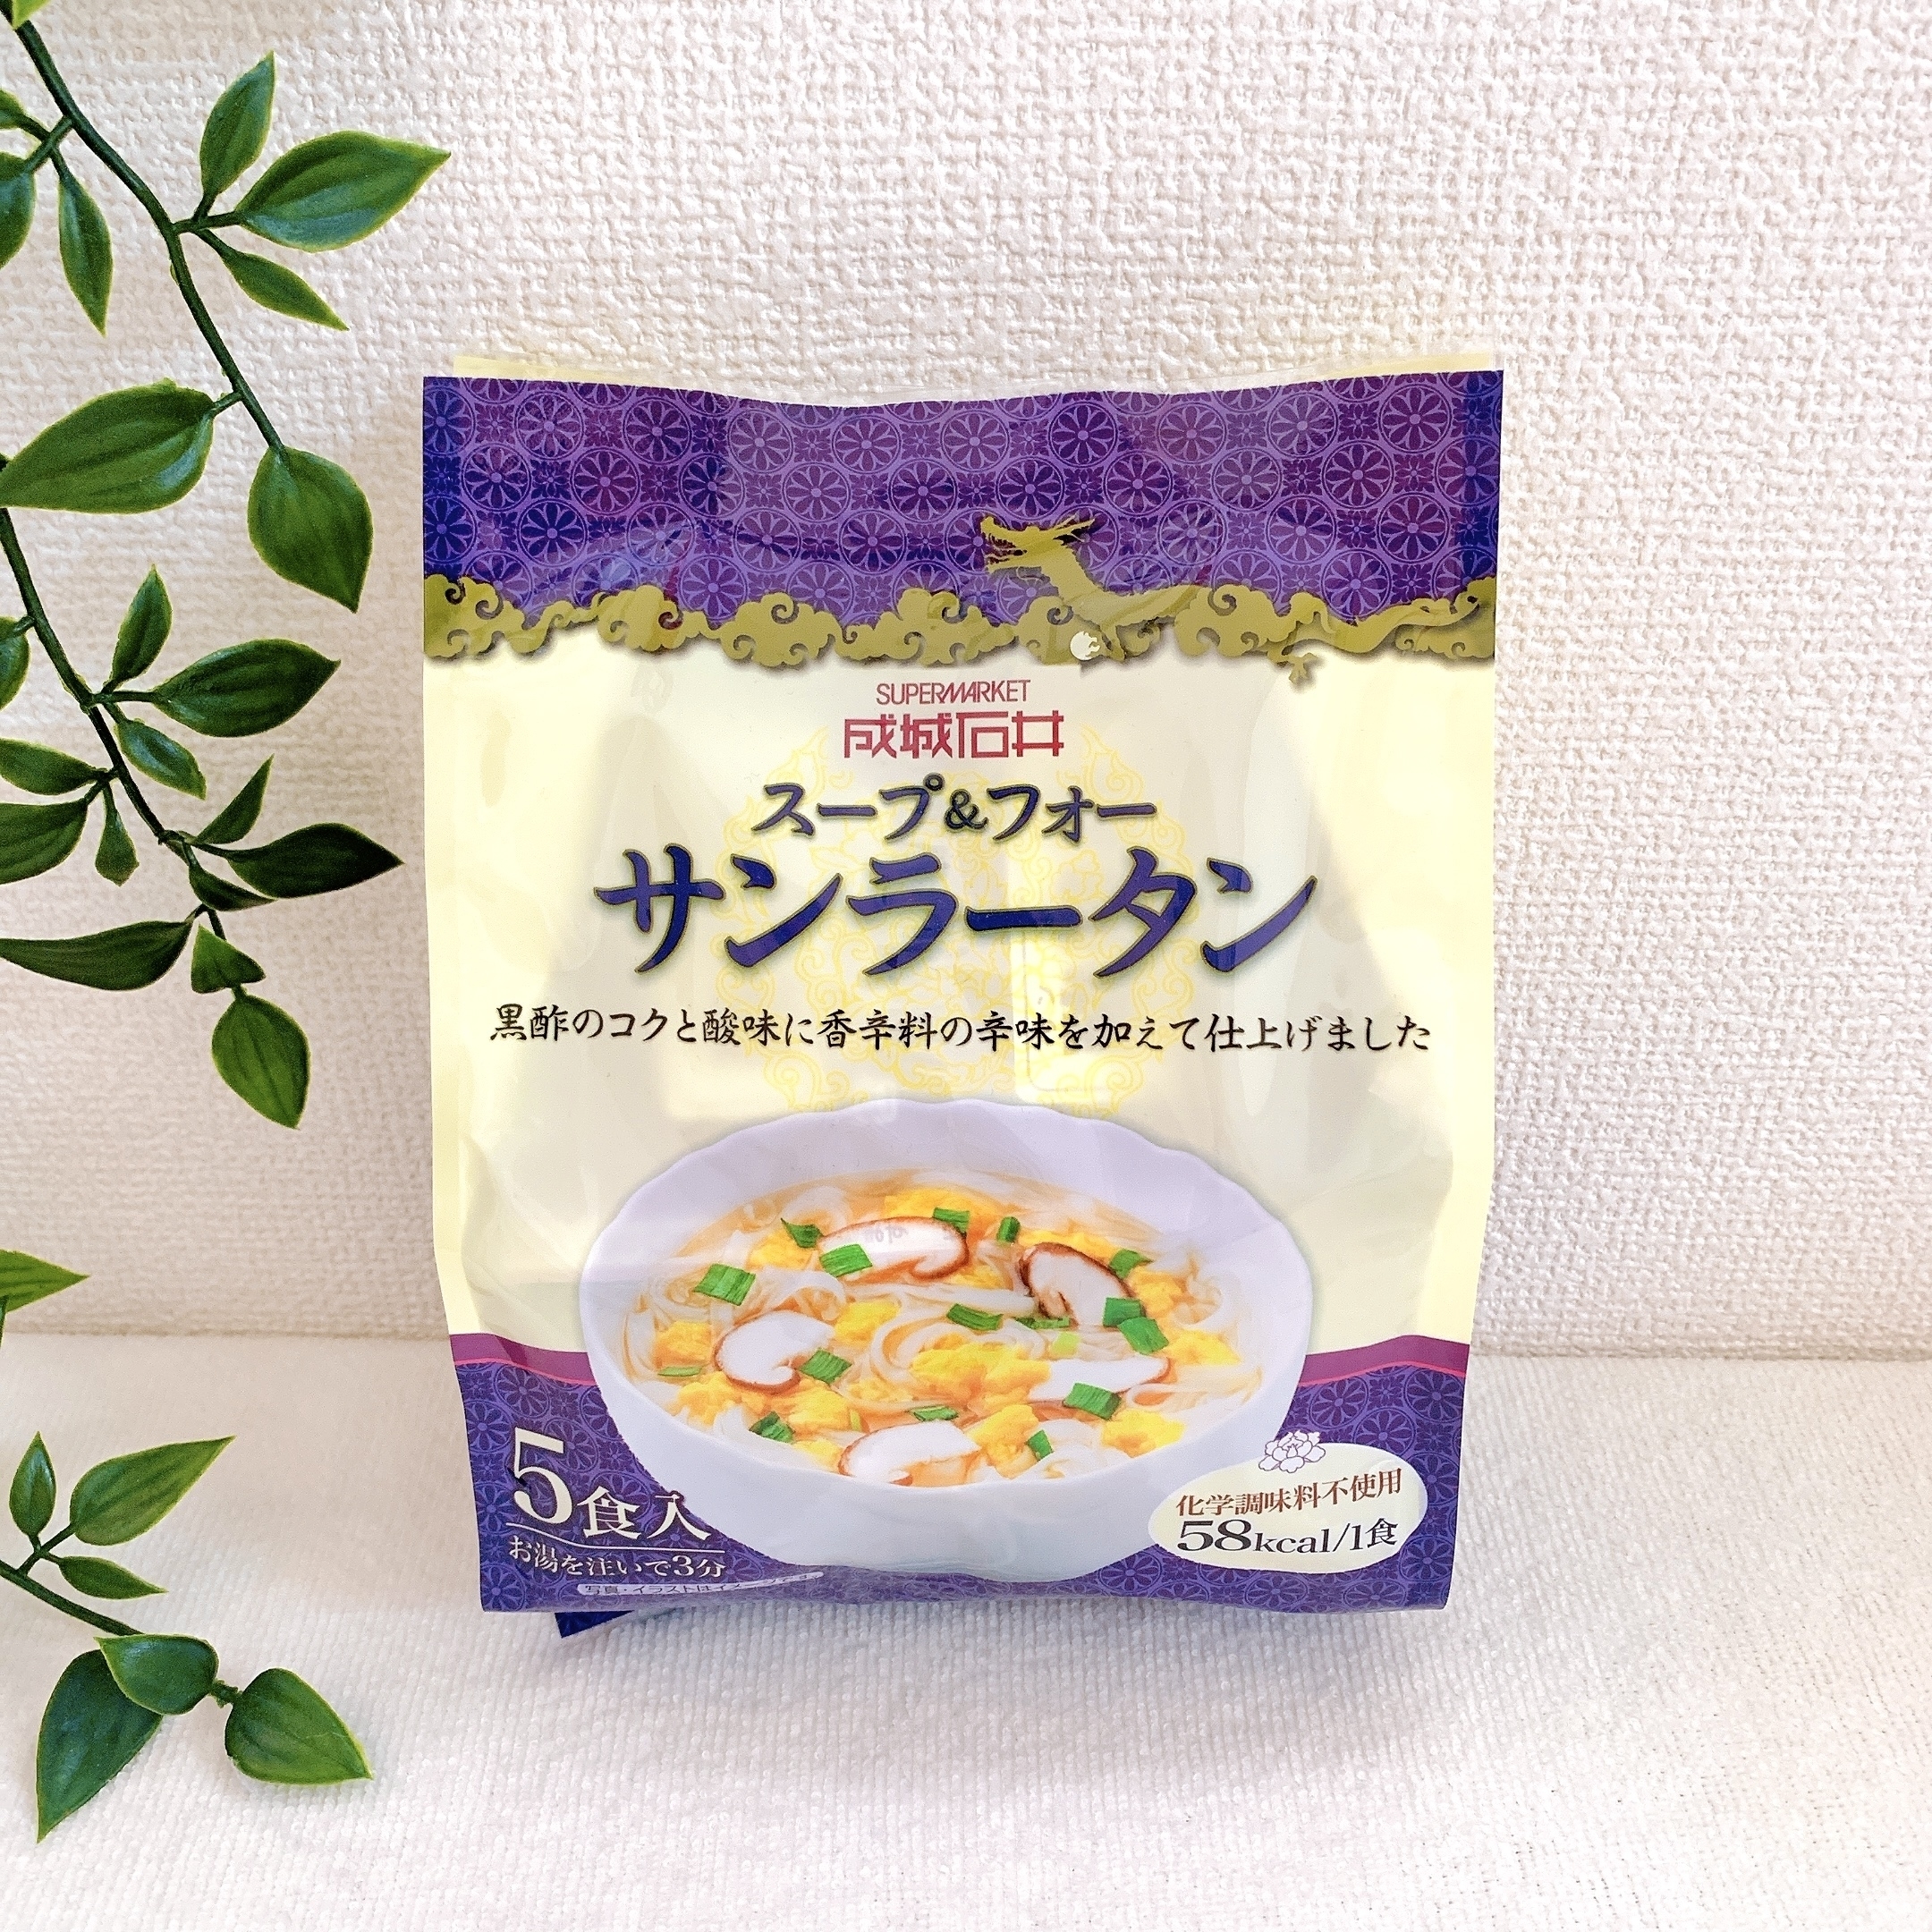 成城石井のおすすめグルメ「スープ＆フォー サンラータン 5食」